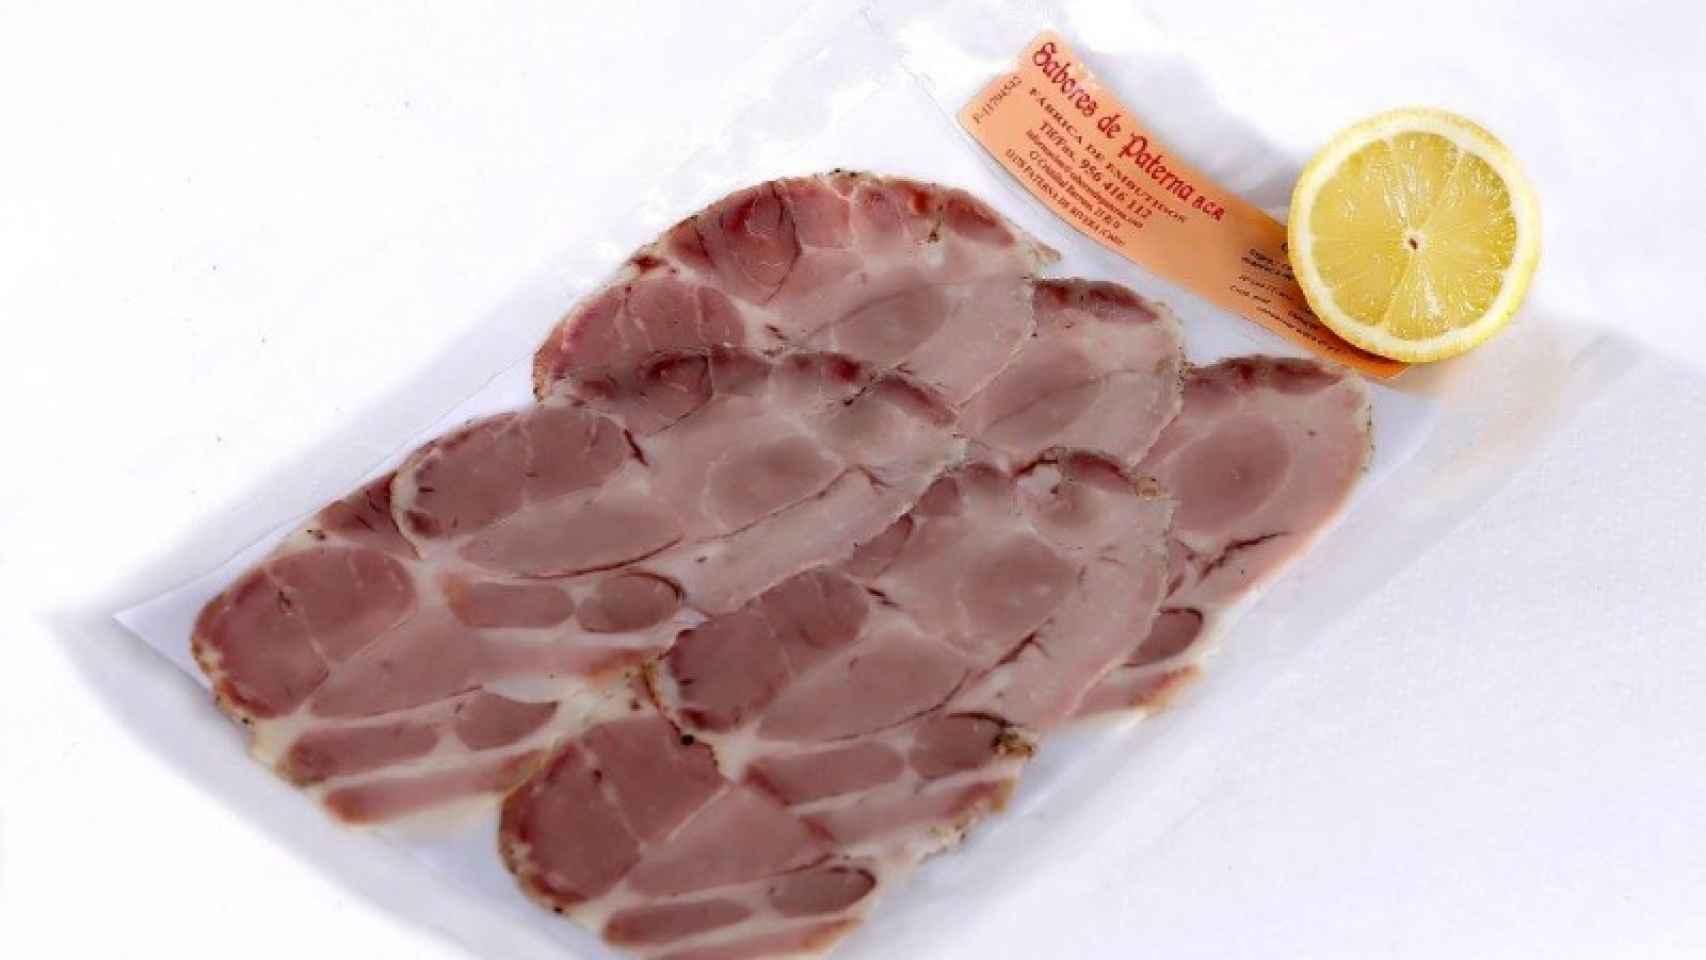 La carne mechada de 'Sabores de Paterna', uno de los alimentos con listeria.